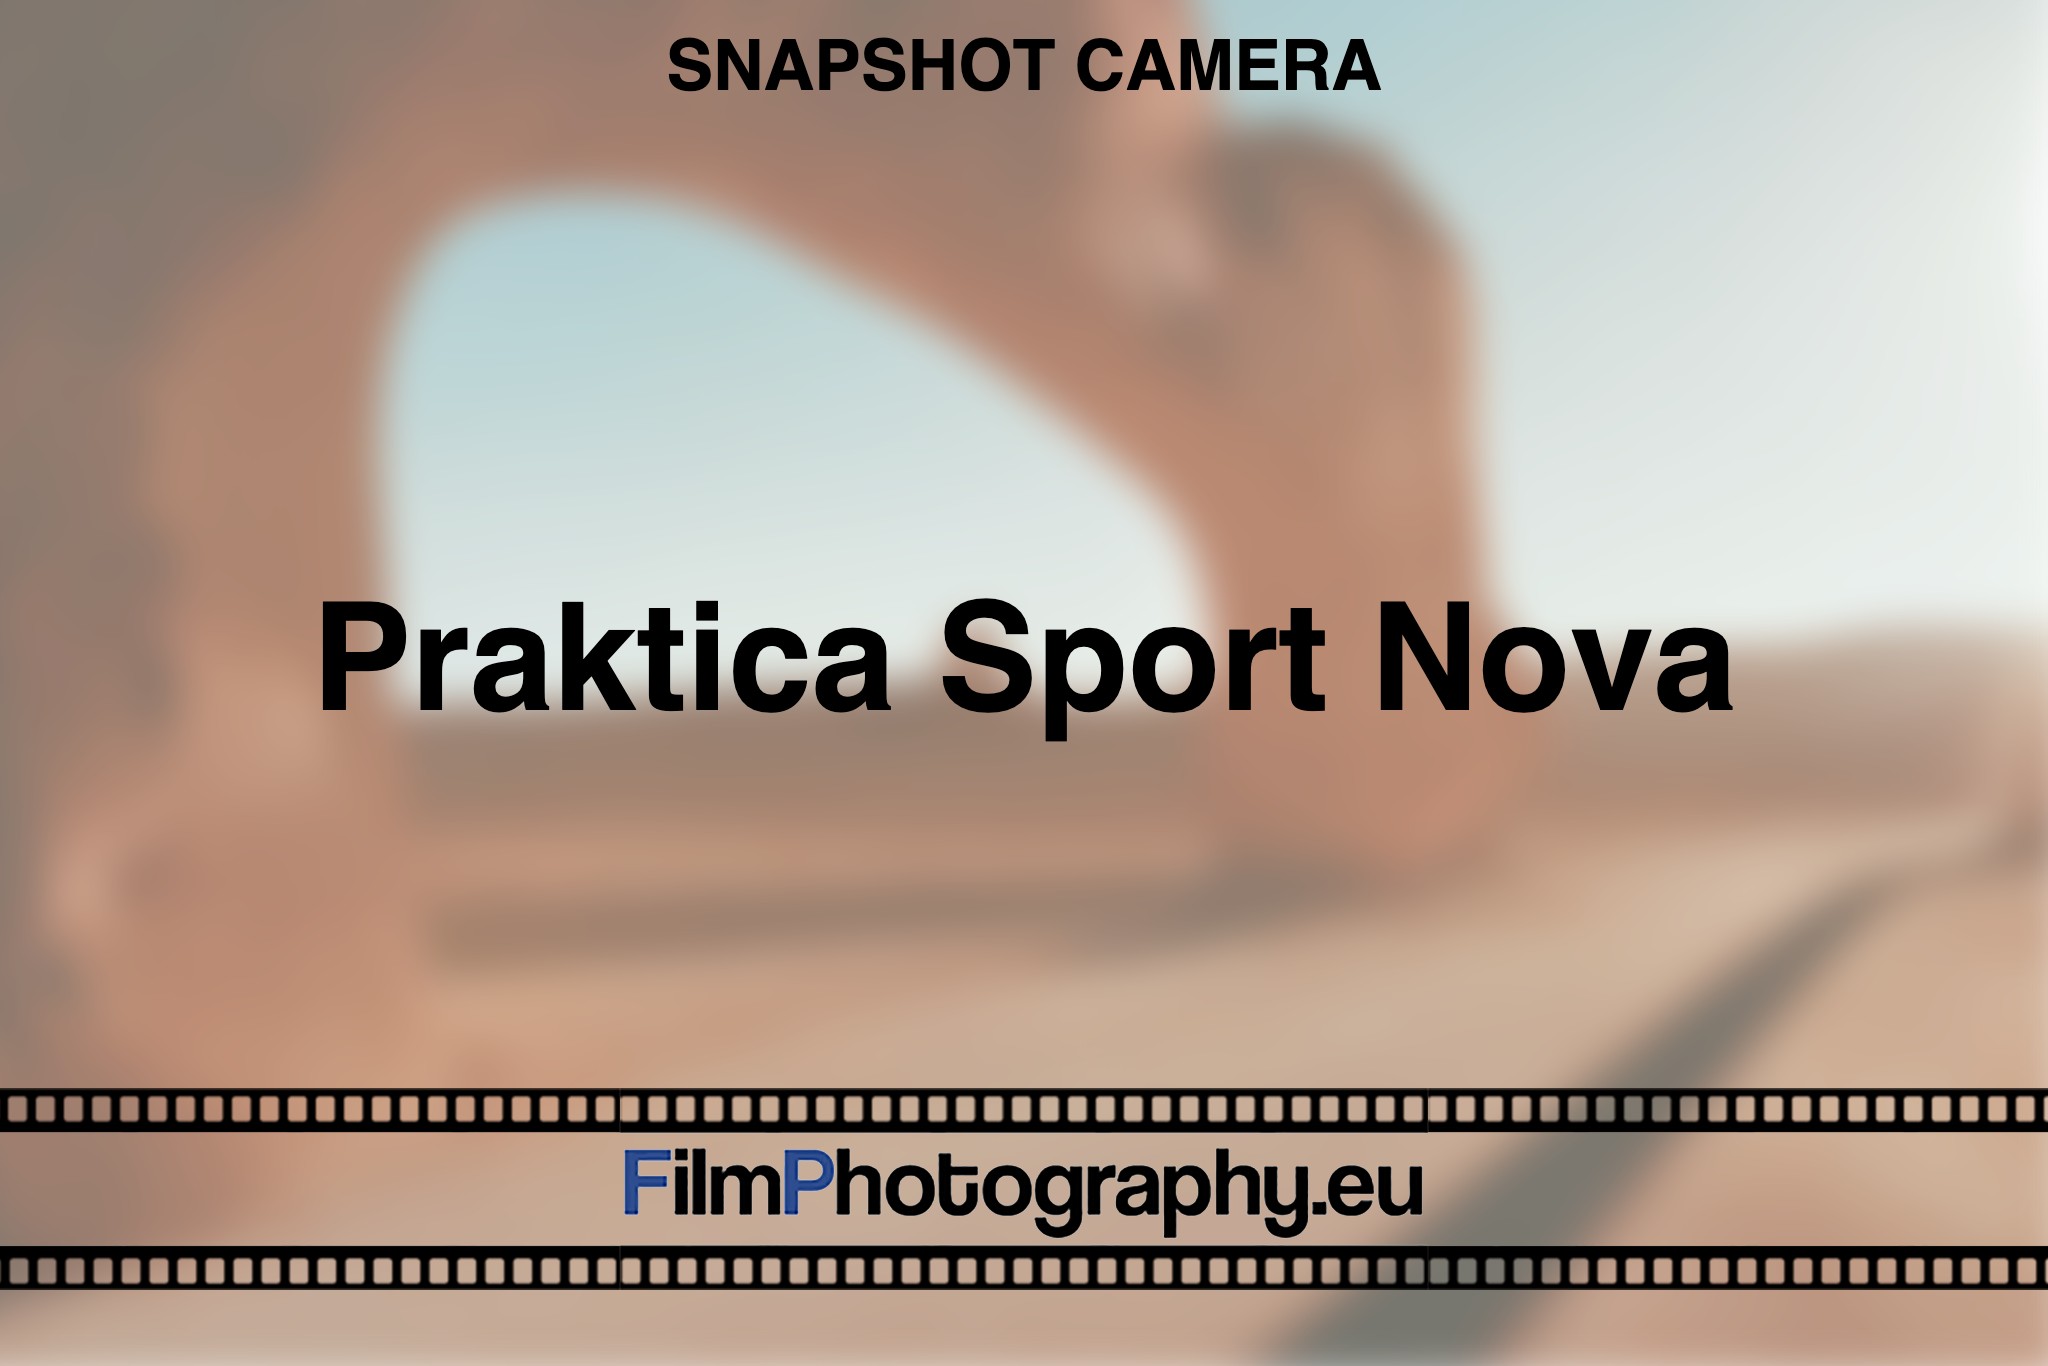 Praktica-Sport-Nova-snapshot-camera-bnv